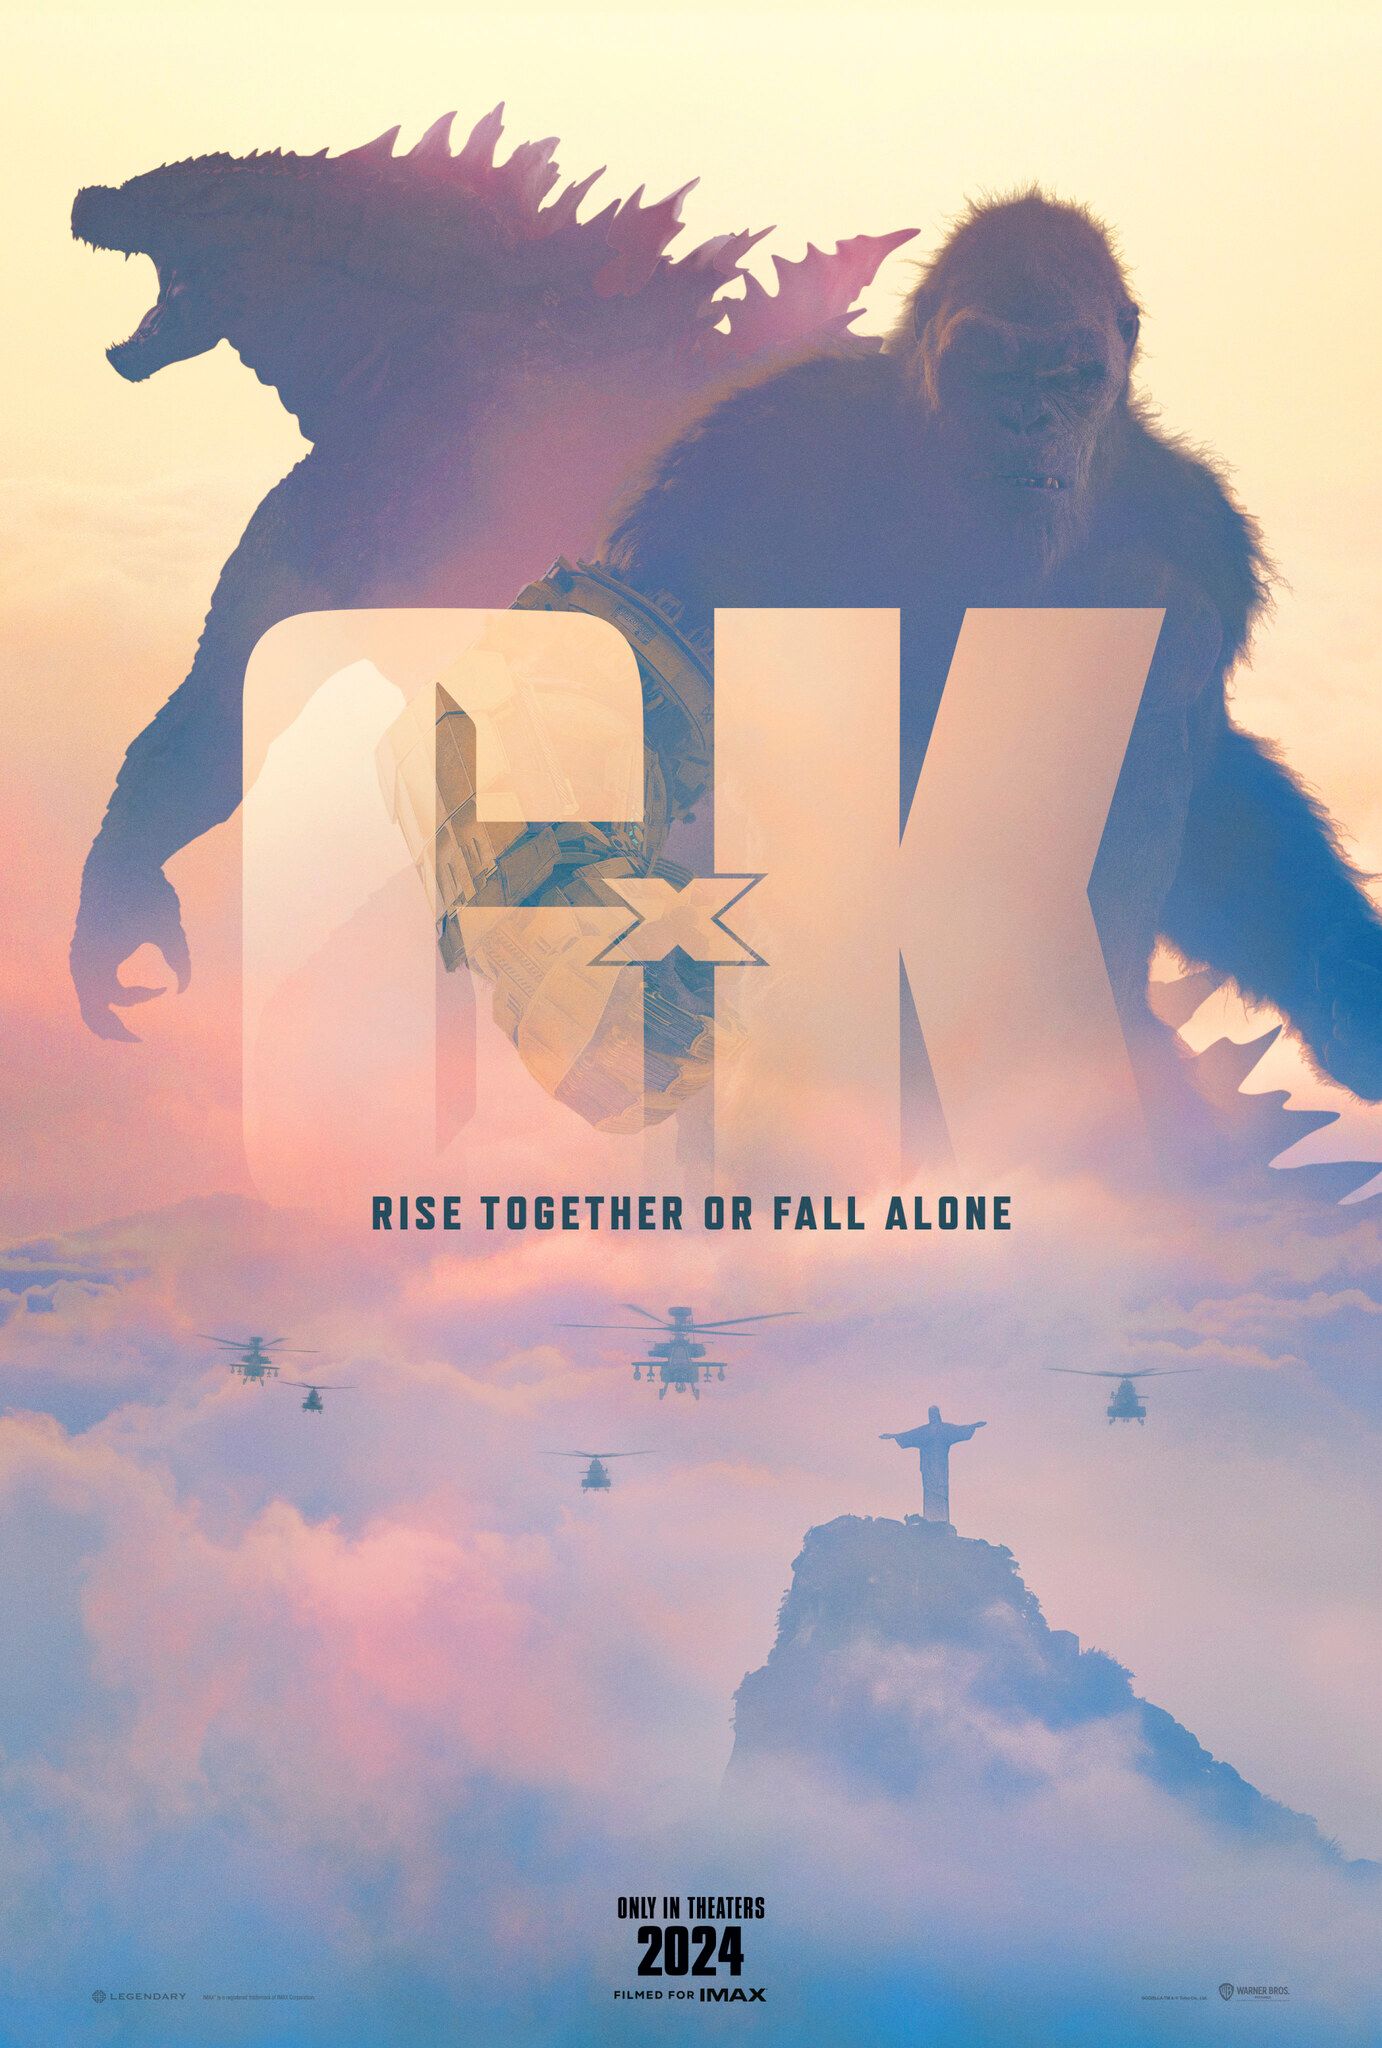 Hideo Kojima Reviews Godzilla x Kong, Calls Latest Monsterverse Entry “Impressive” & “Very Touching